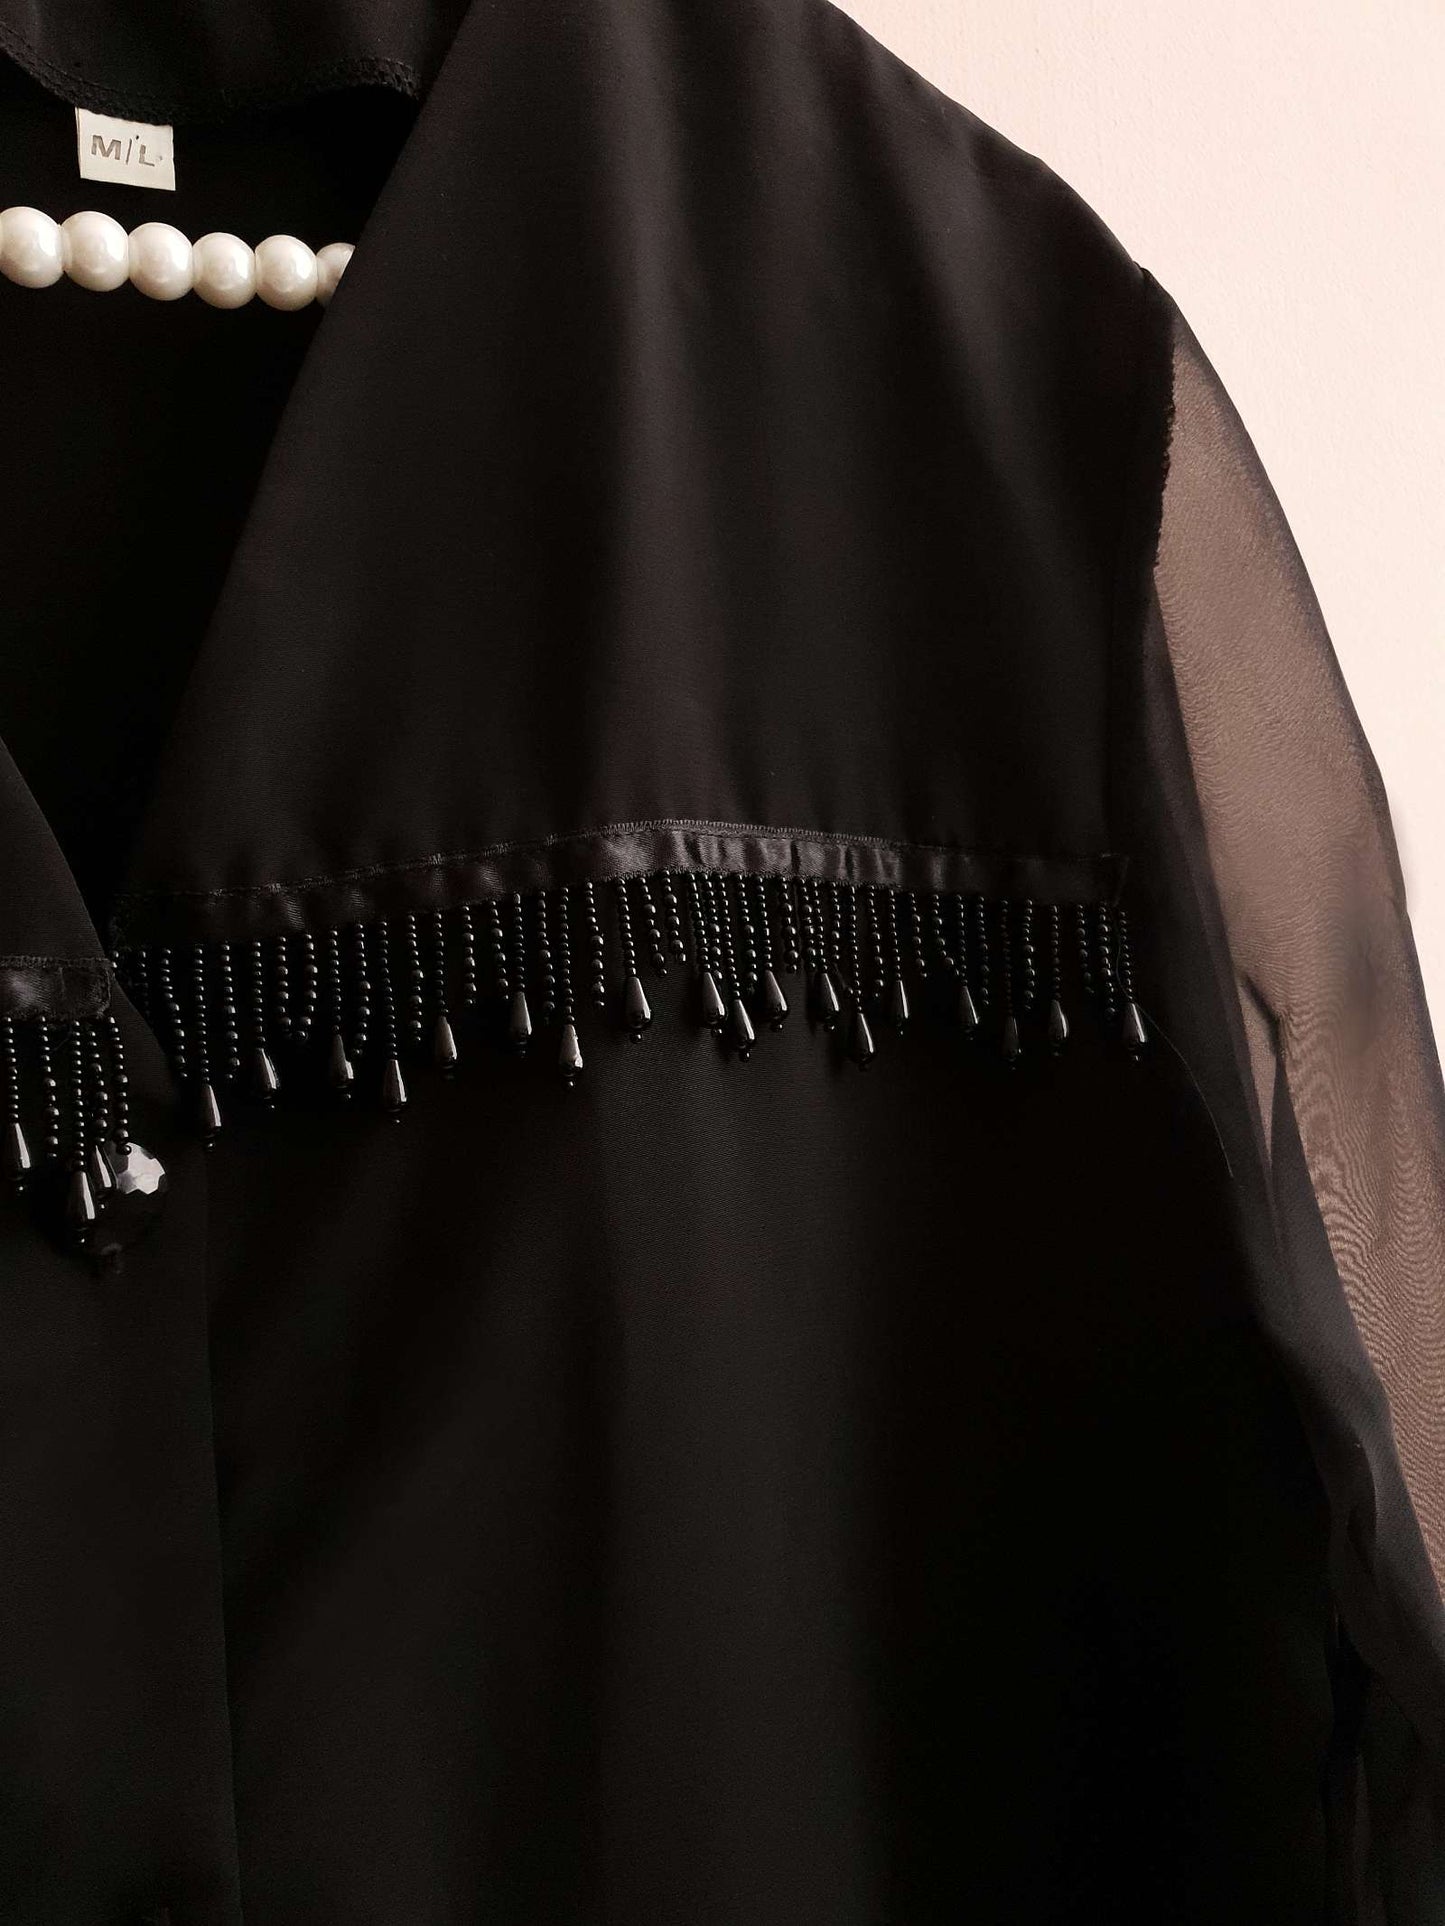 Vintage Black Beaded Boho Shirt 1980s - Blouse Size 16/18 Oversize